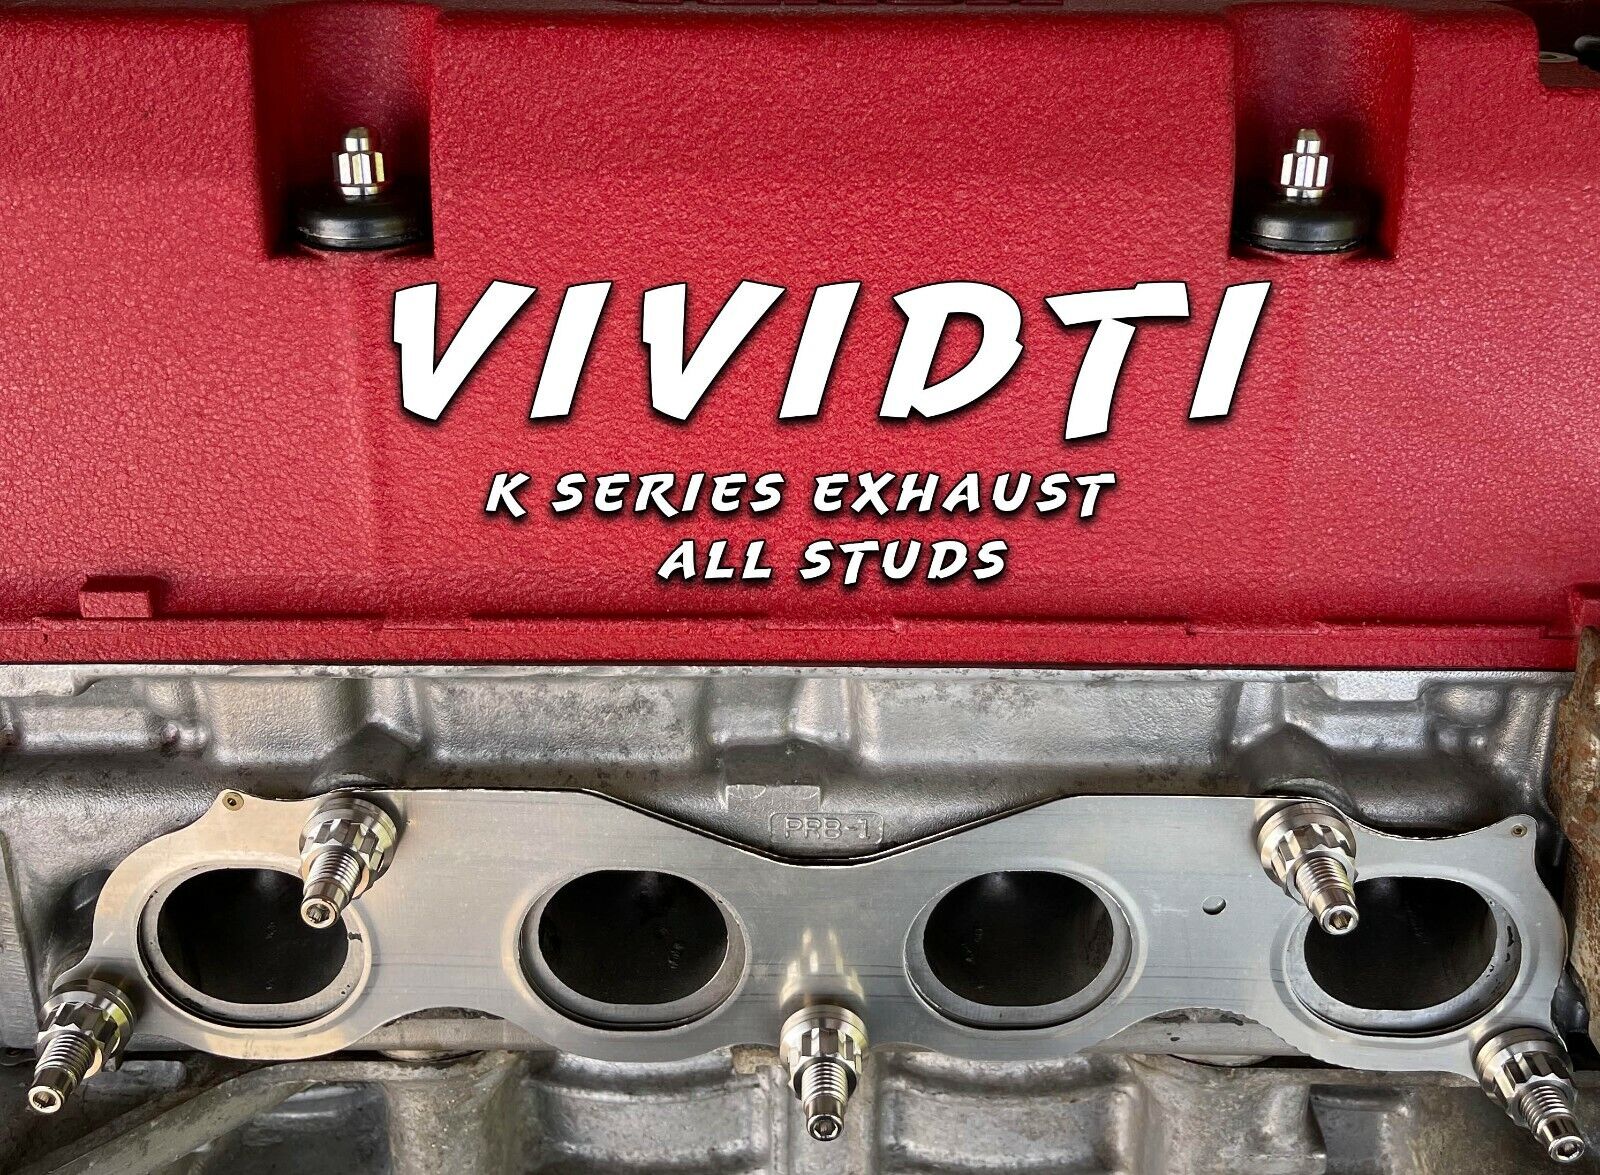 VividTi - Fits Honda Acura K SERIES - TITANIUM EXHAUST MANIFOLD STUD KIT 